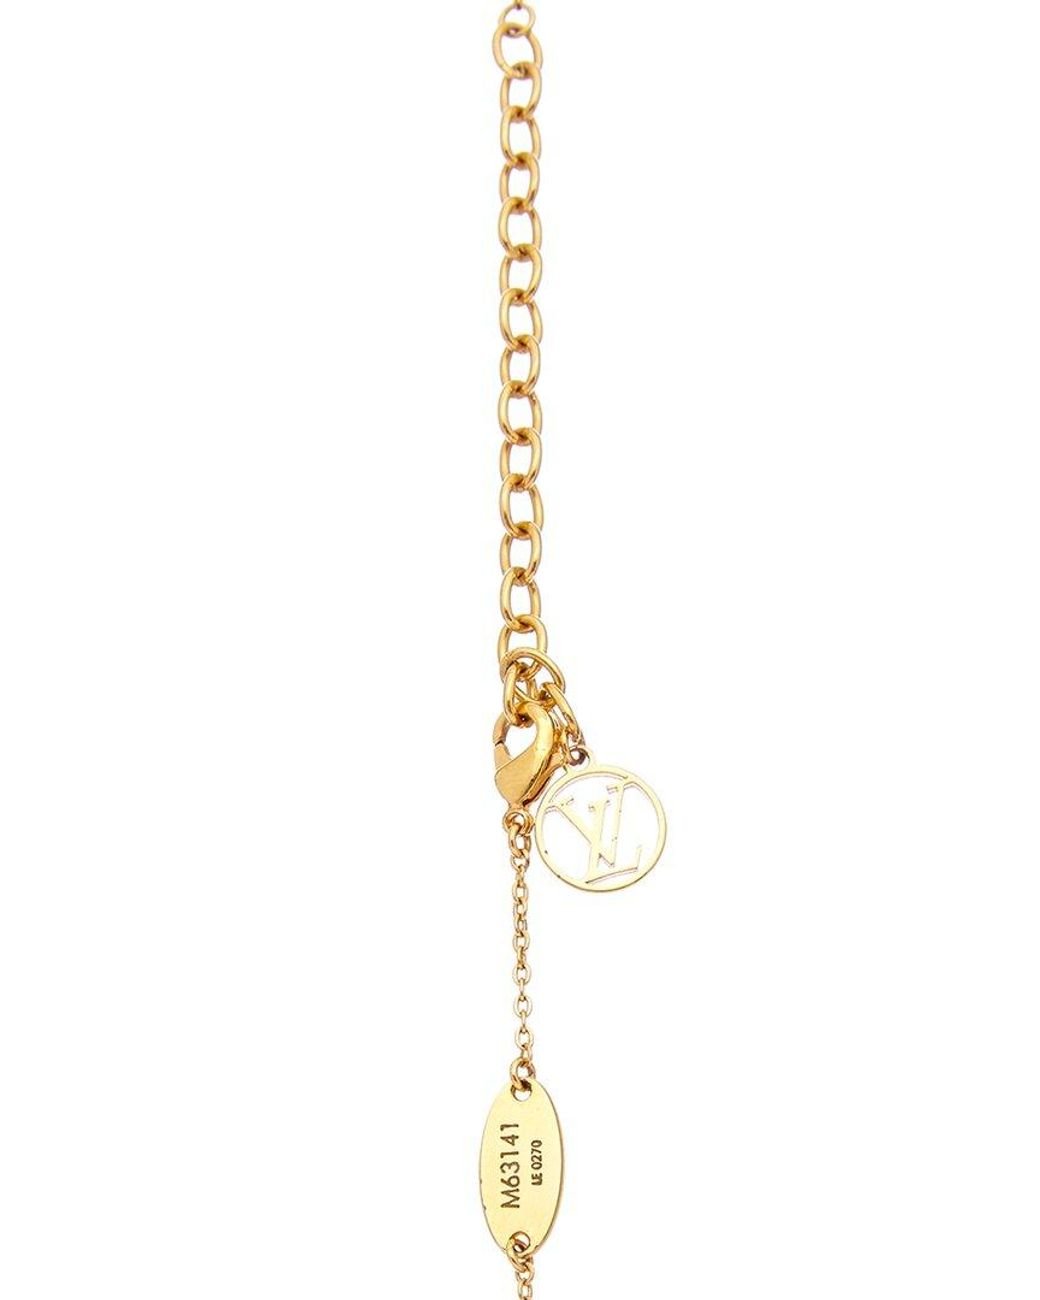 Louis Vuitton Nanogram necklace (M63141)  Necklace, Women accessories  jewelry, Accessories jewelry necklace